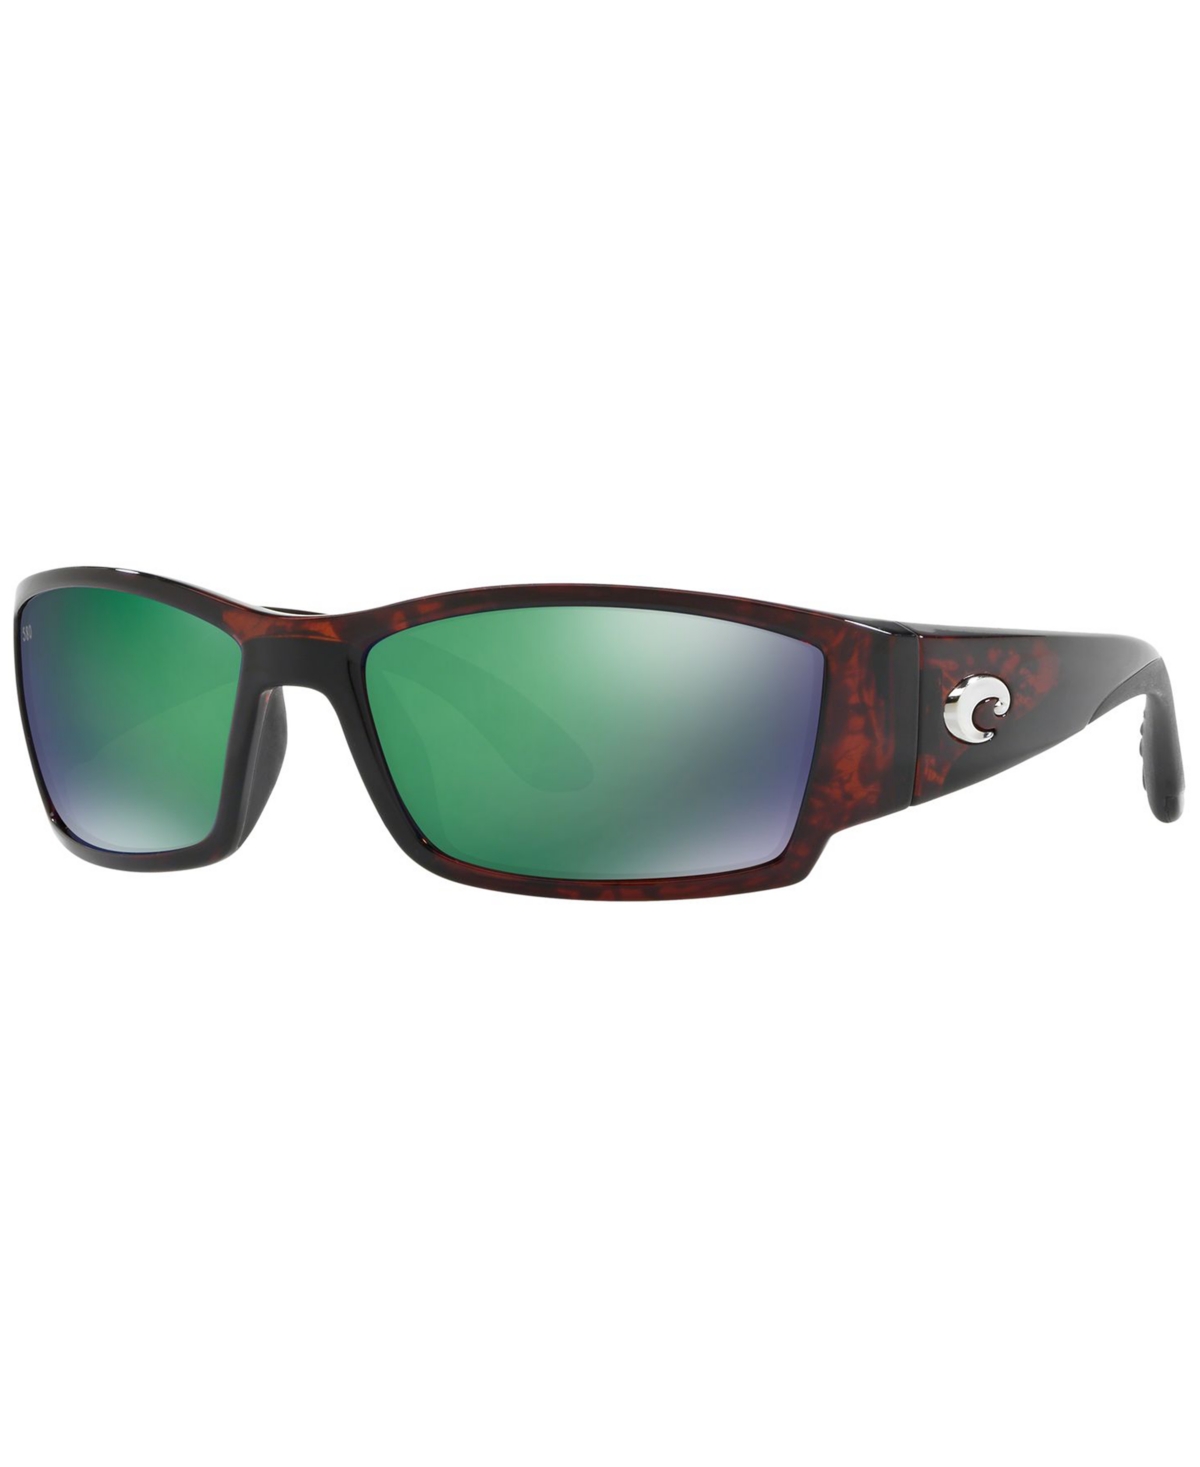 Costa Del Mar Polarized Sunglasses, Corbina 62 In Black Matte,green Mirror